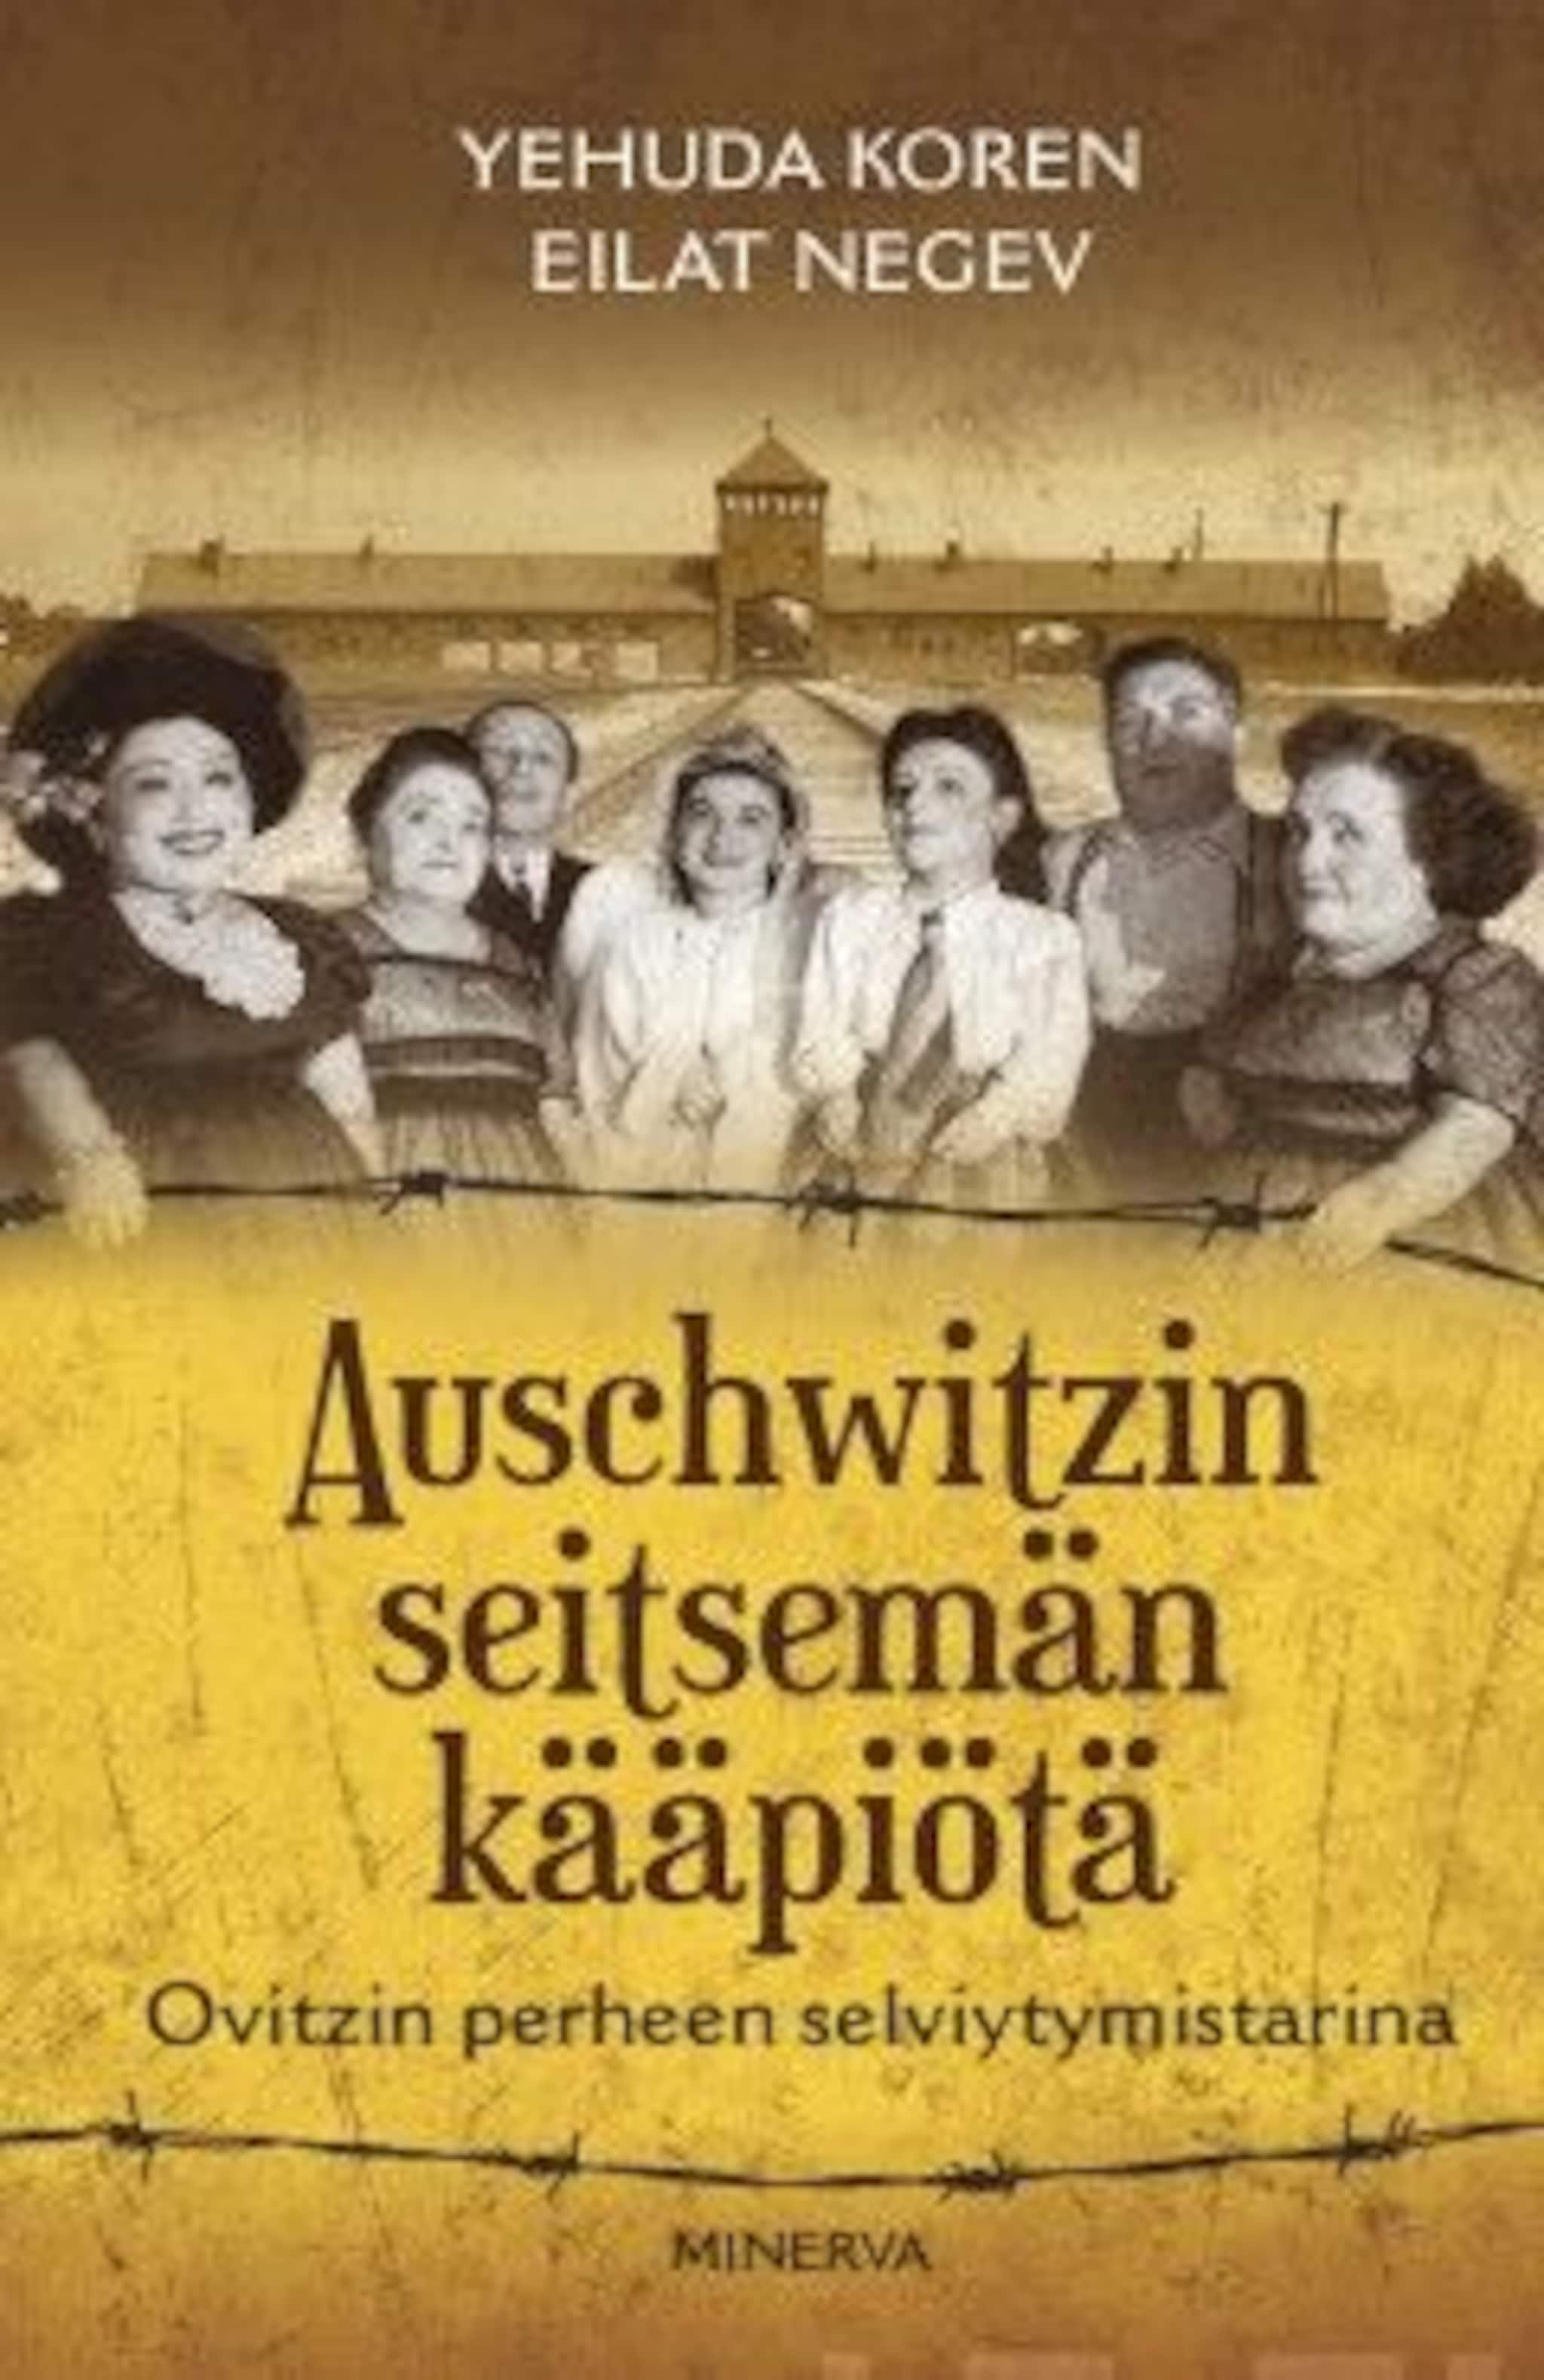 Auschwitzin seitsemän kääpiötä ilmaiseksi